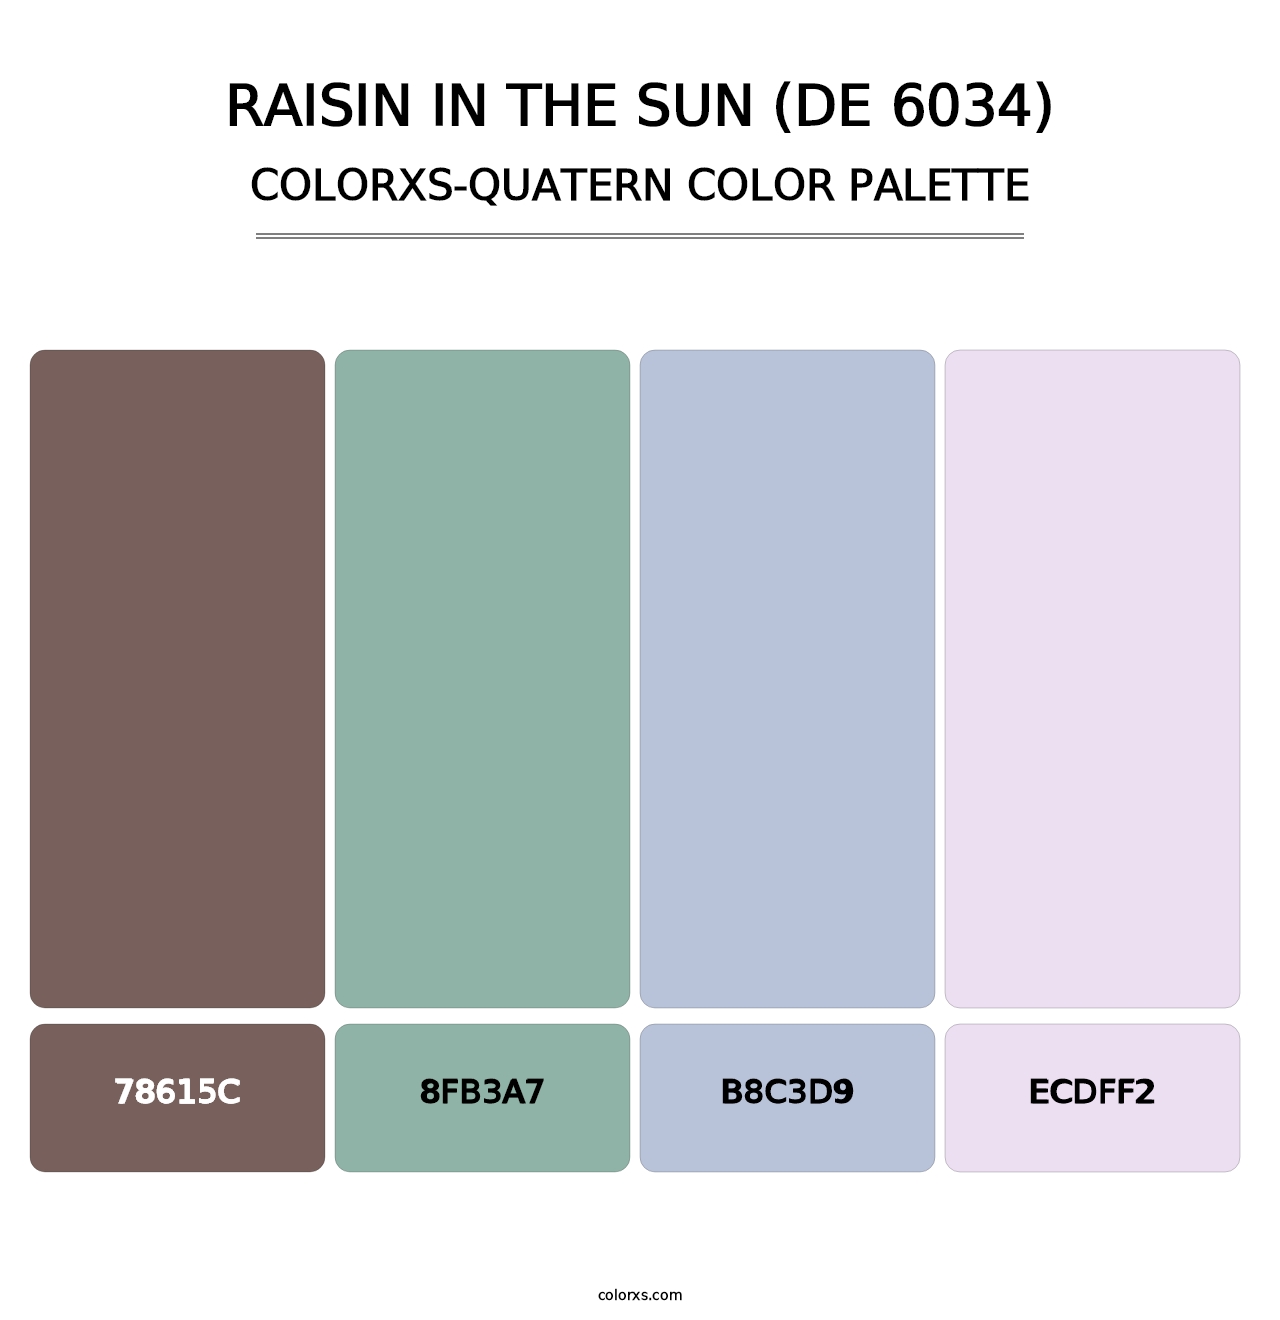 Raisin in the Sun (DE 6034) - Colorxs Quatern Palette